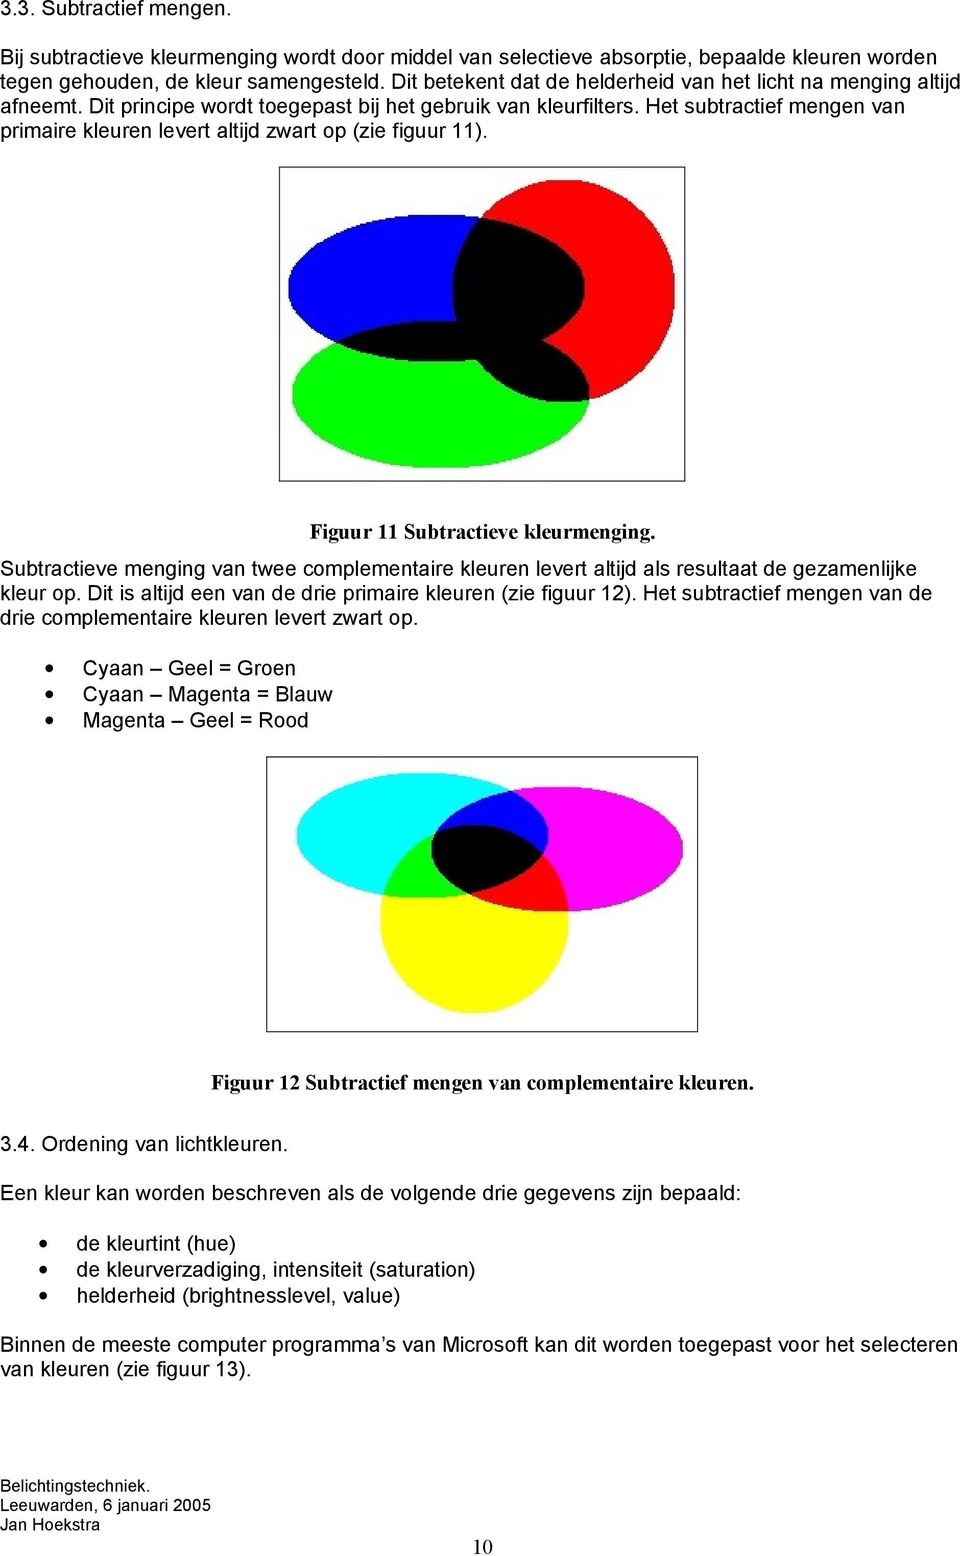 Het subtractief mengen van primaire kleuren levert altijd zwart op (zie figuur 11). Figuur 11 Subtractieve kleurmenging.